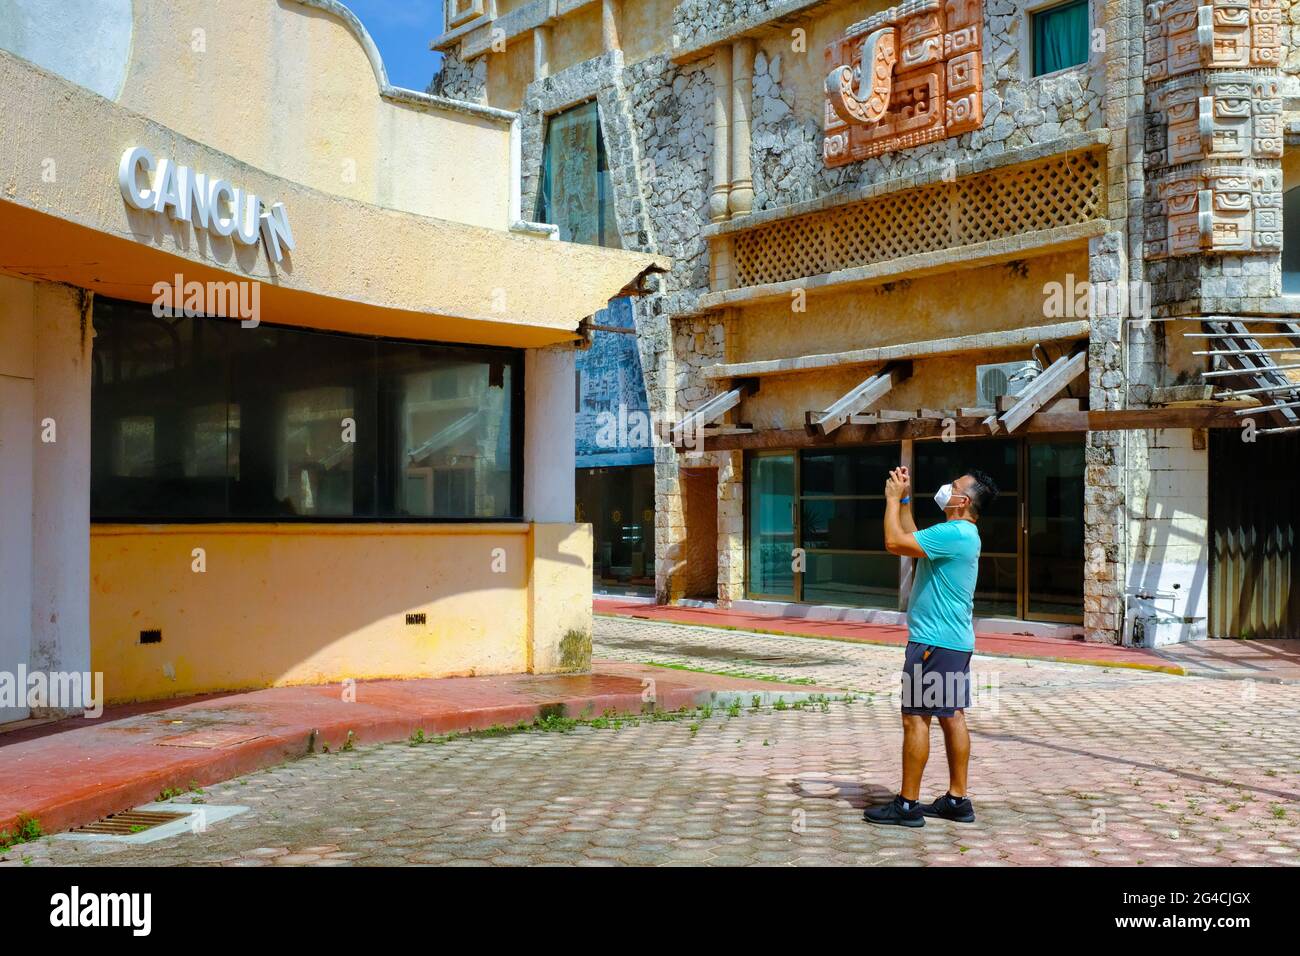 Photos touristiques bâtiments abandonnés dans une rue vide à Cancun, Mexique. La ville touristique mexicaine a été économiquement dévastée par la pandémie de Covid-19. De nombreuses entreprises de restauration aux touristes n'ont pas pu survivre aux restrictions sanitaires et à la forte baisse du tourisme. Banque D'Images